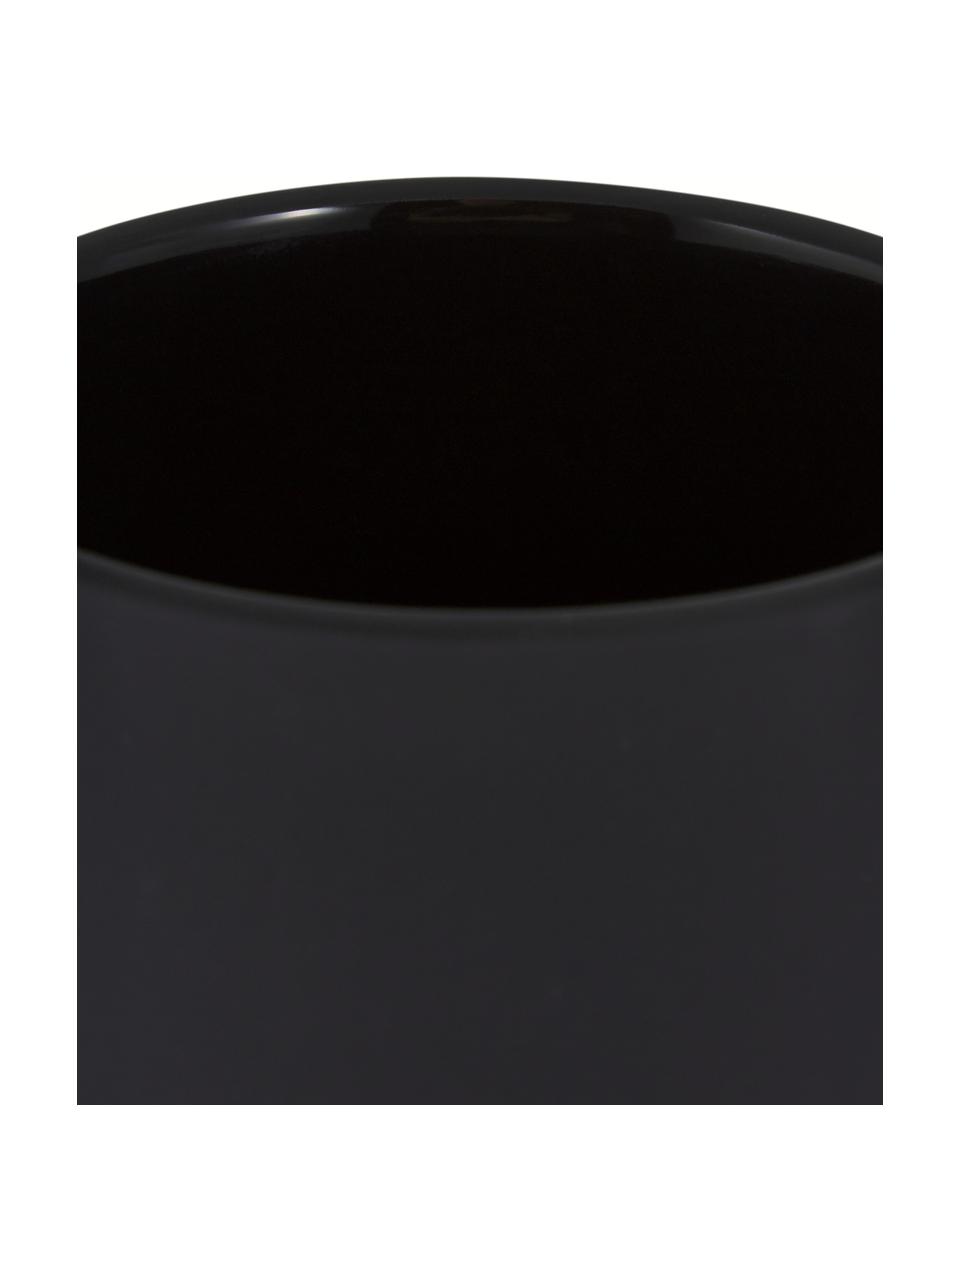 Dispenser sapone in maiolica con superficie soft-touch Ume, Contenitore: gres rivestita con superf, Nero, Ø 8 x Alt. 13 cm